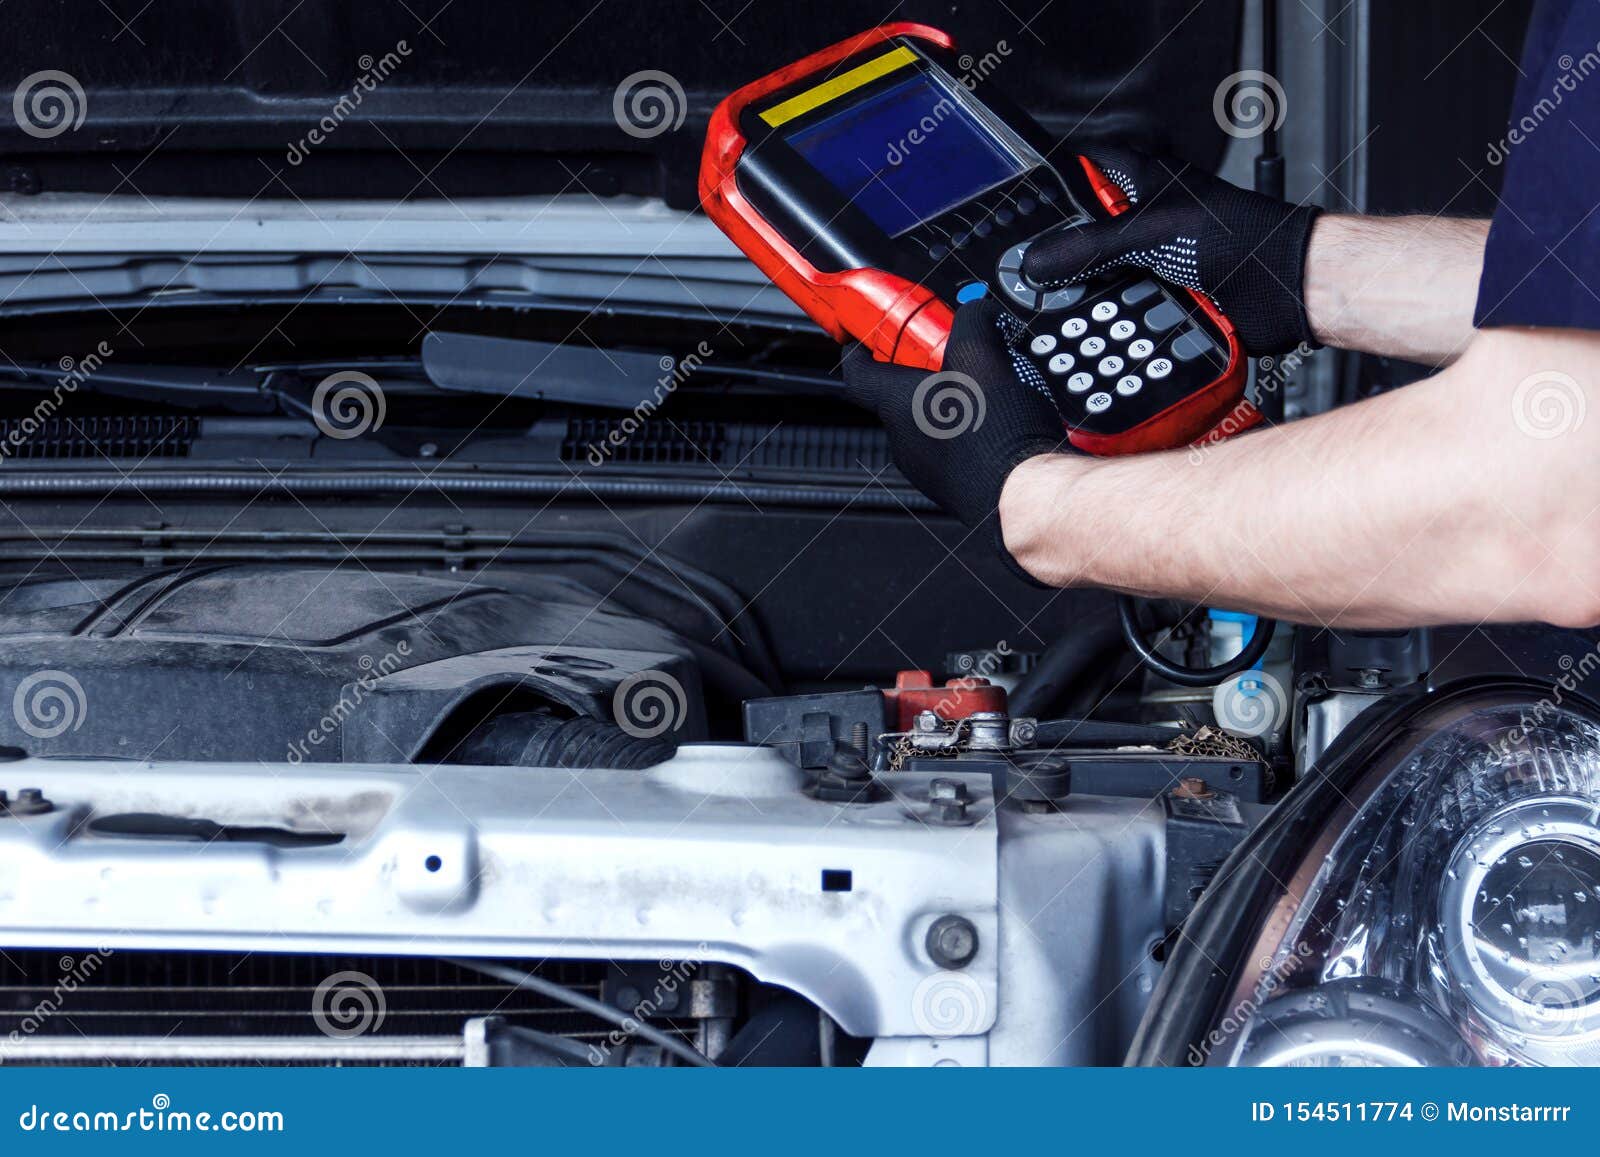 mechanic engineer repair car at car service station